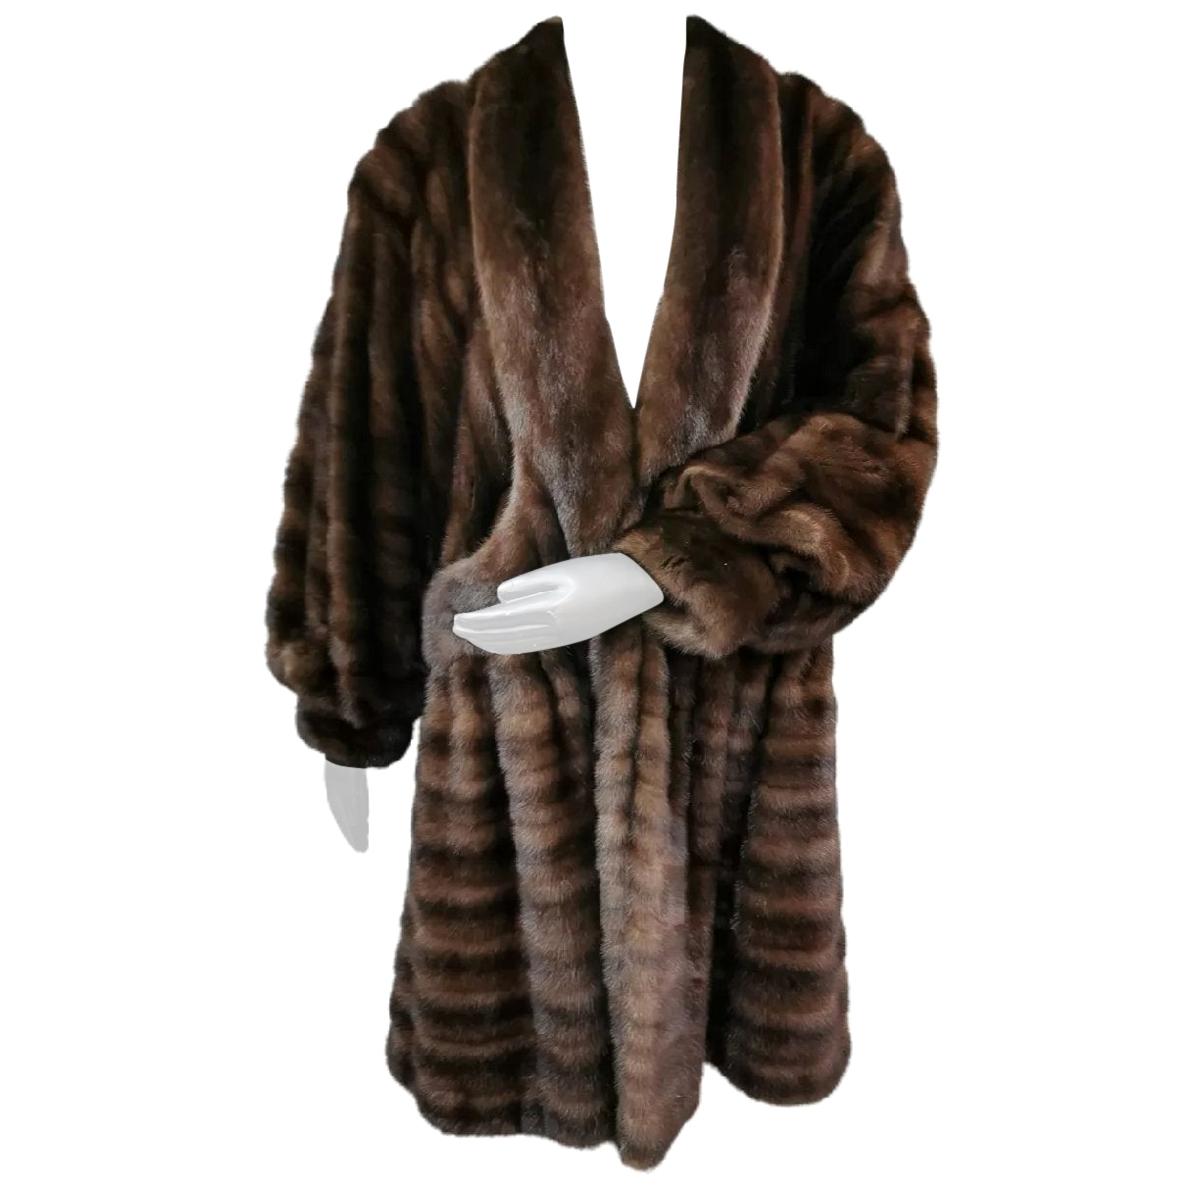 Unused demi buff wide sweep swing Mink fur coat size 10-12